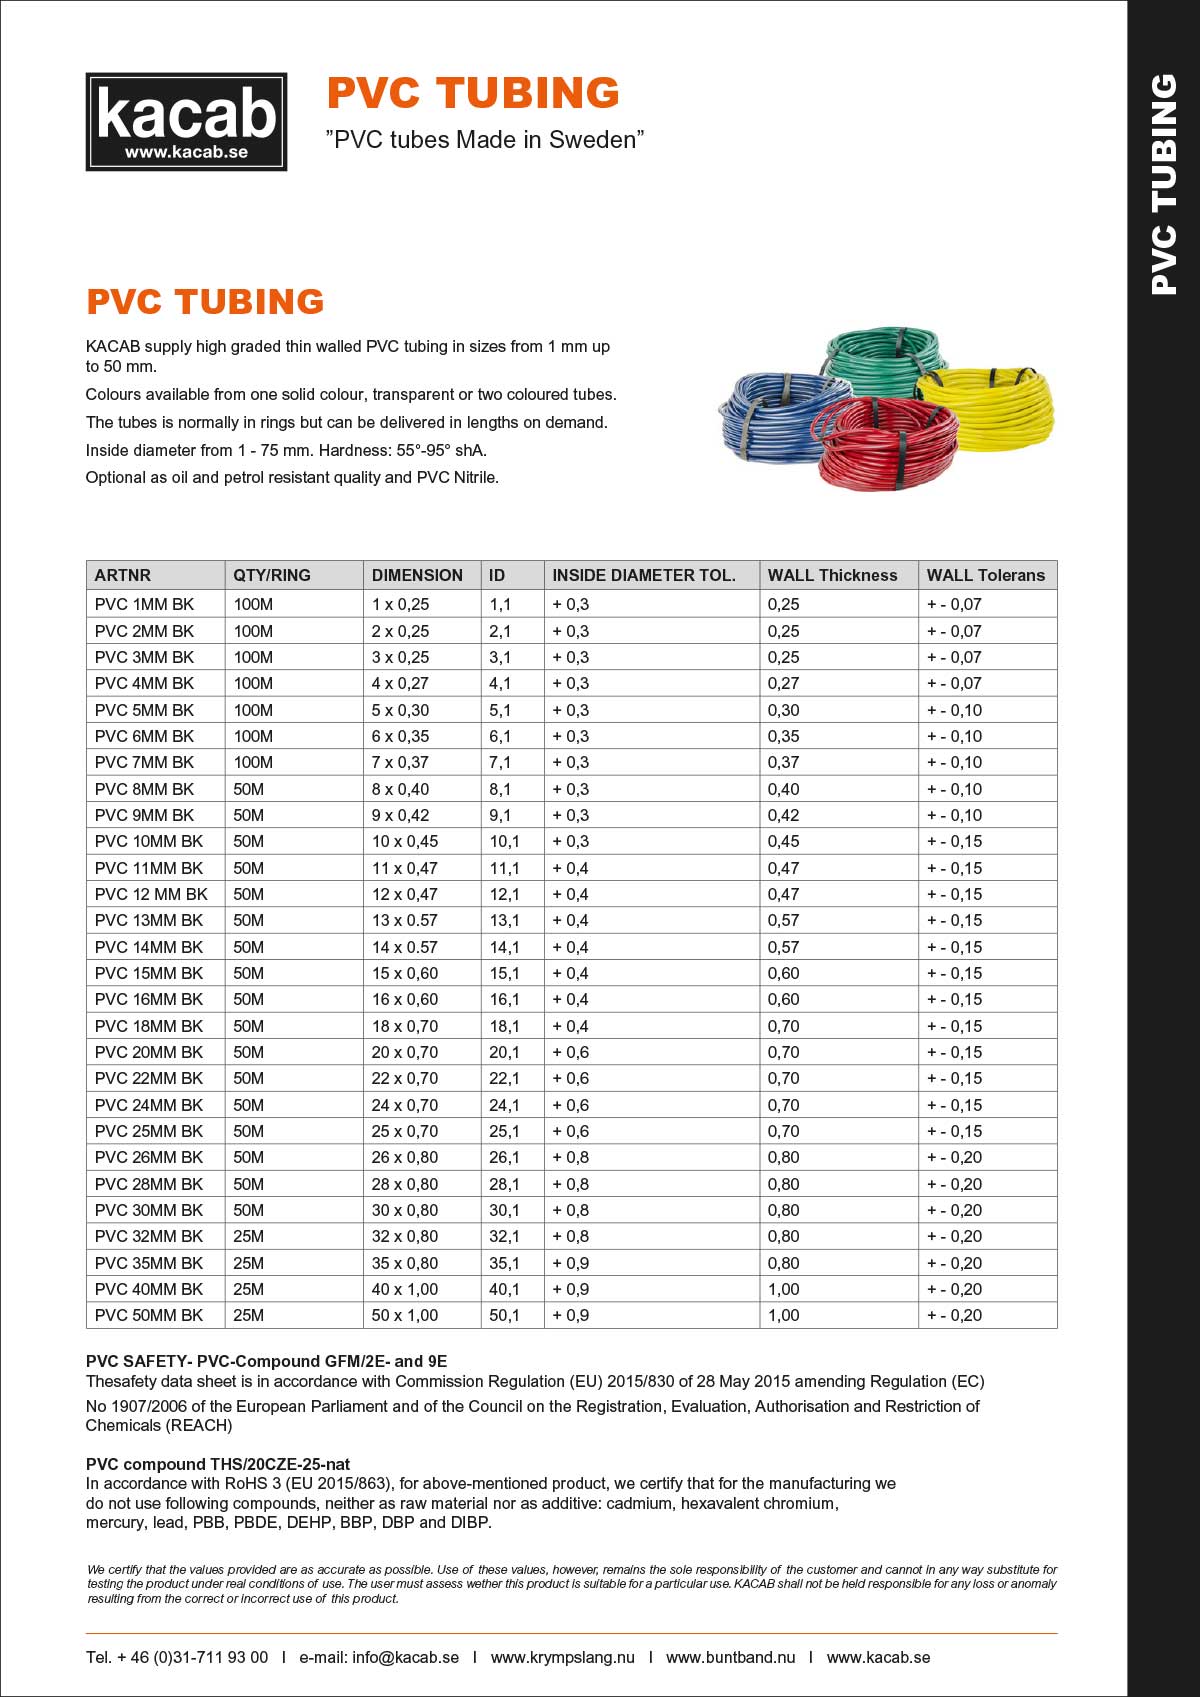 PVC tubing